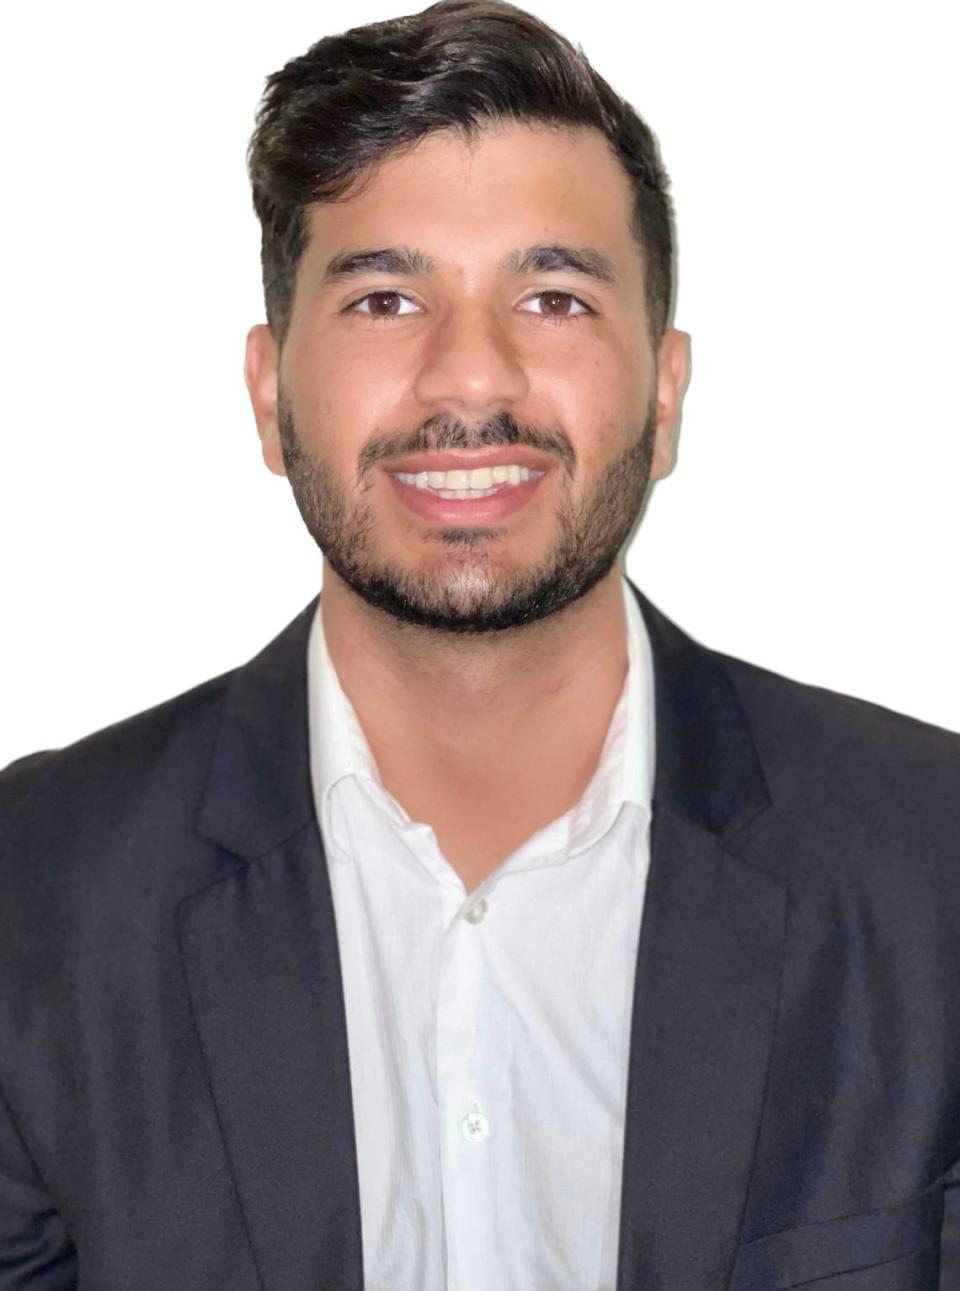 Javier Salgueiro, estudiante de último año de la FIU, realizó el curso gratuito de introducción a la ingeniería de software de CodePath y trabajará en American Express como ingeniero de software cuando se gradúe.